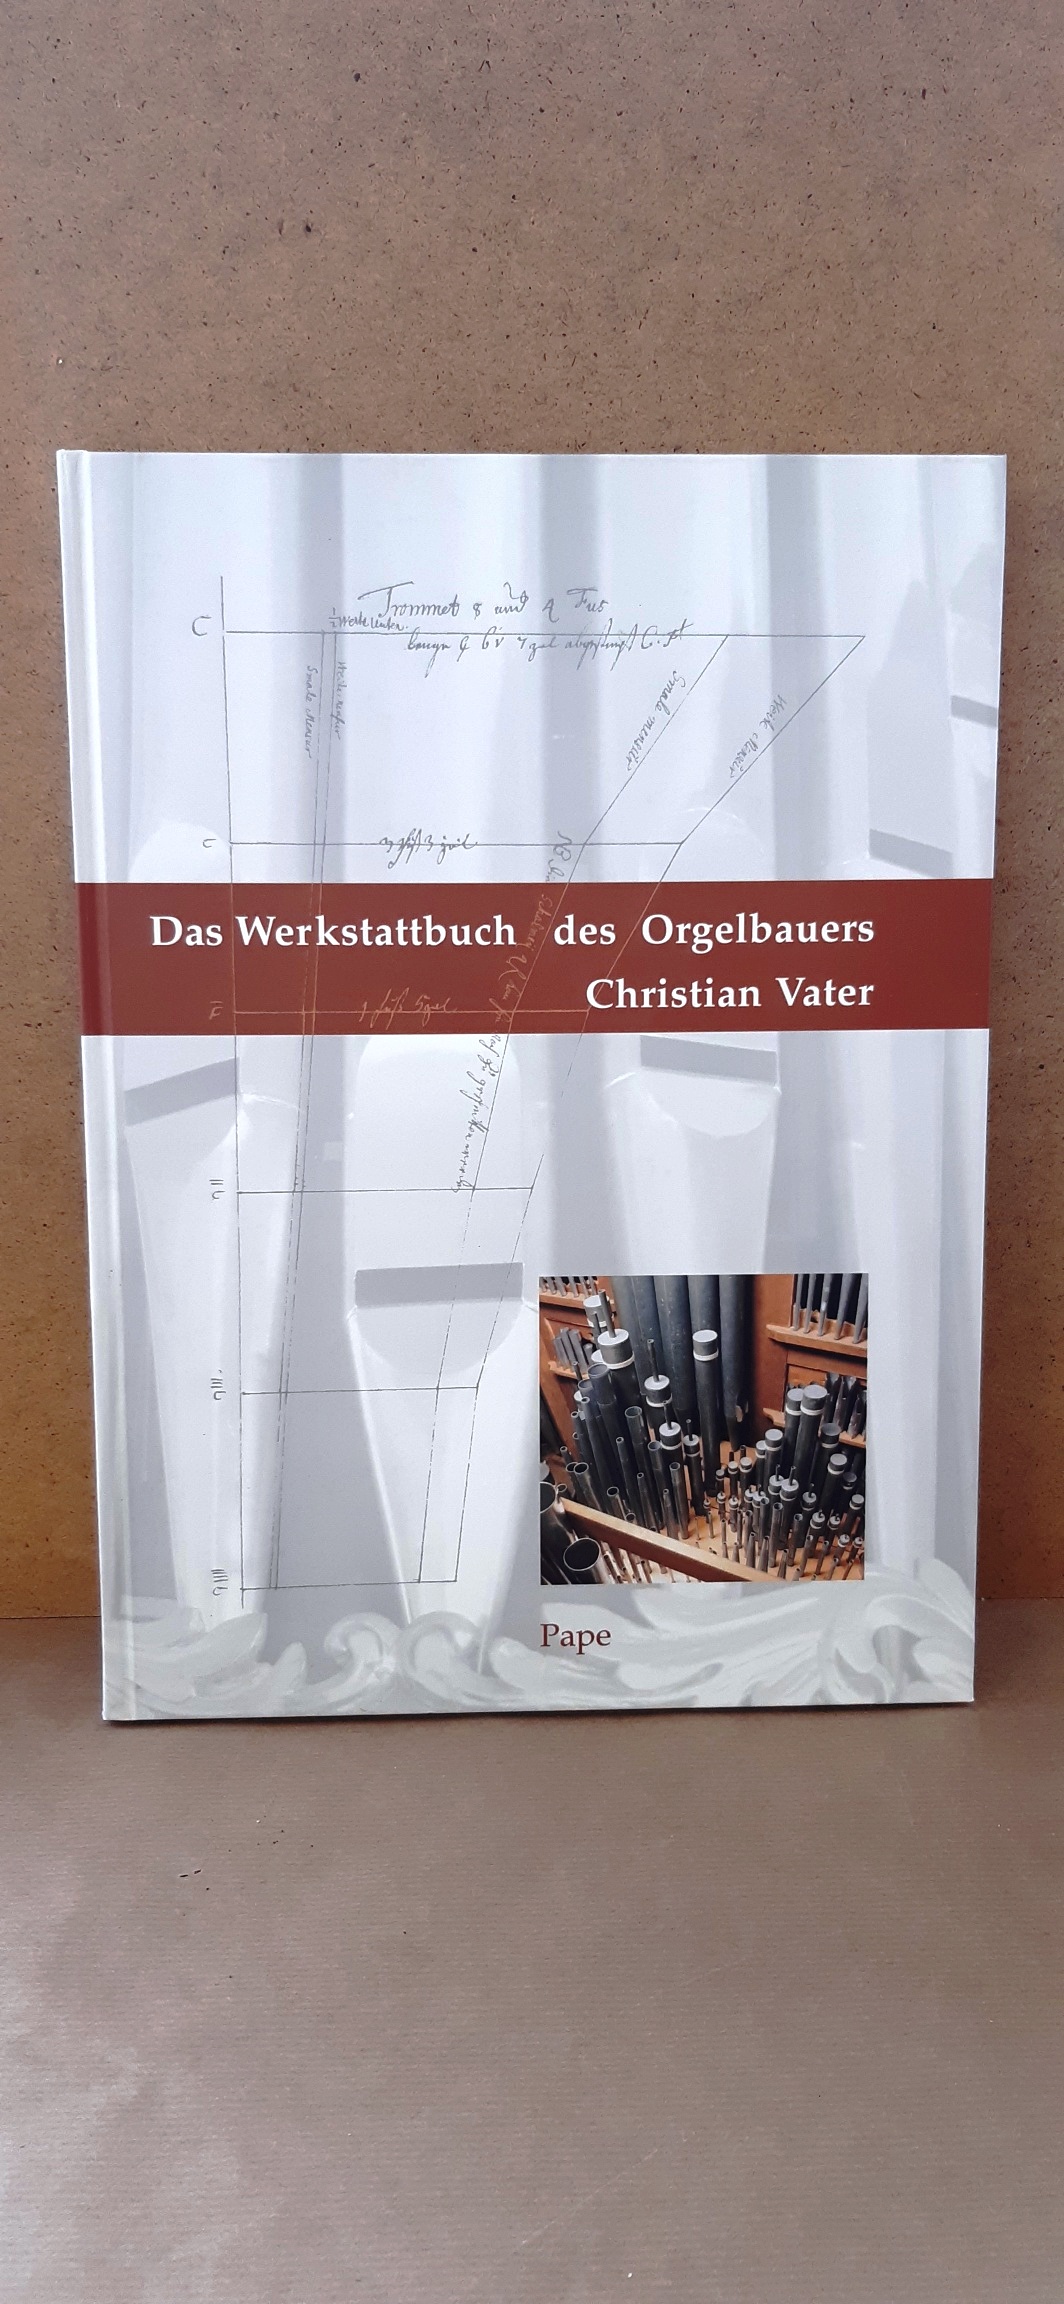 Das Werkstattbuch des Orgelbauers Christian Vater: Faksimile und Kommentar des Textes von 1697